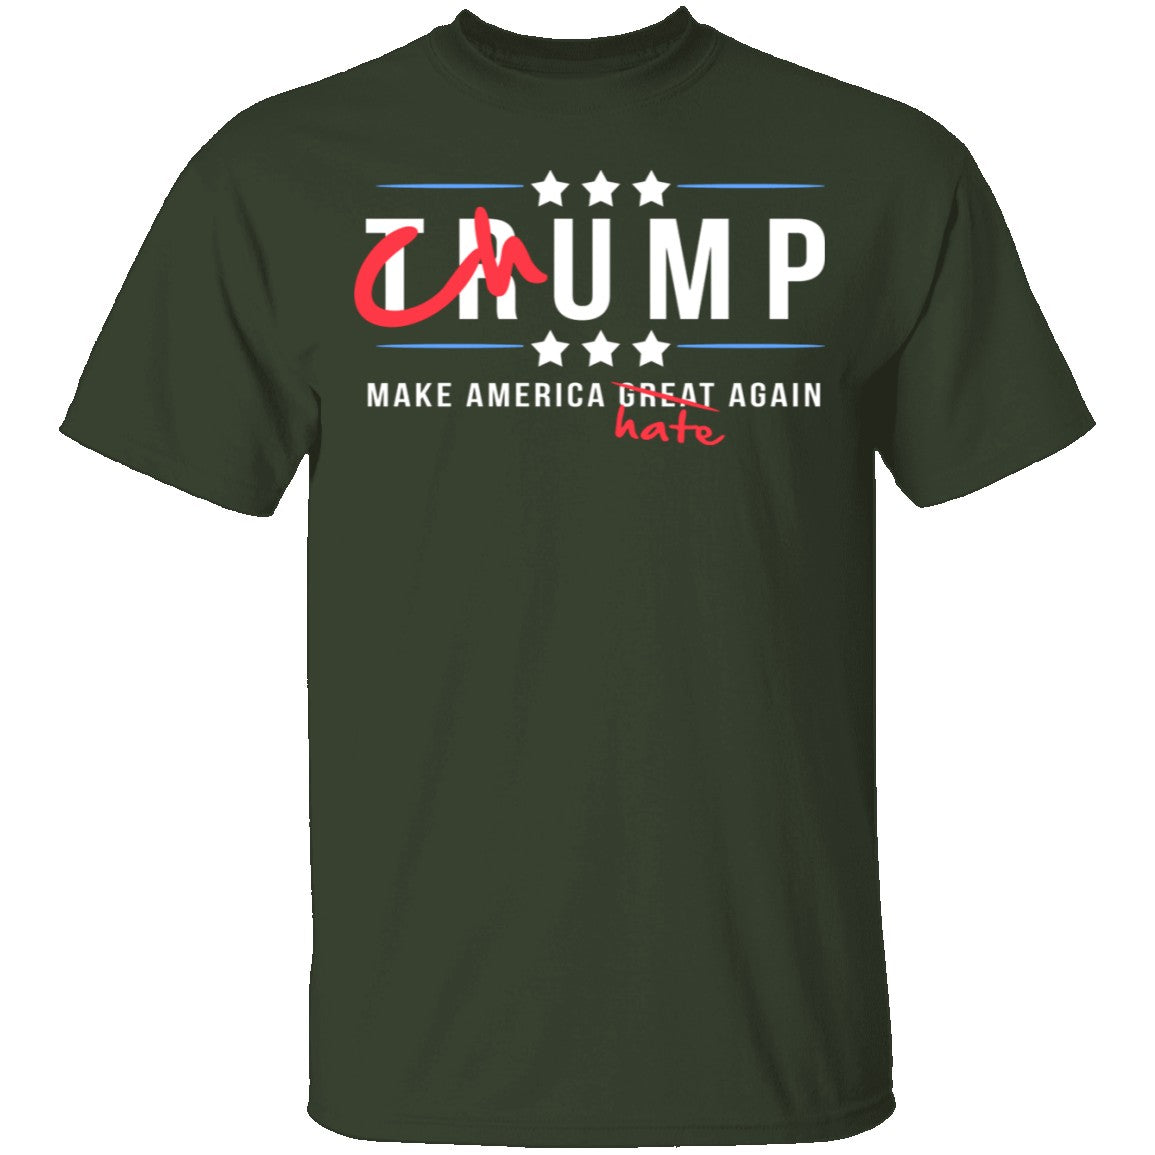 Trump Chump T Shirt CustomCat 1595676047